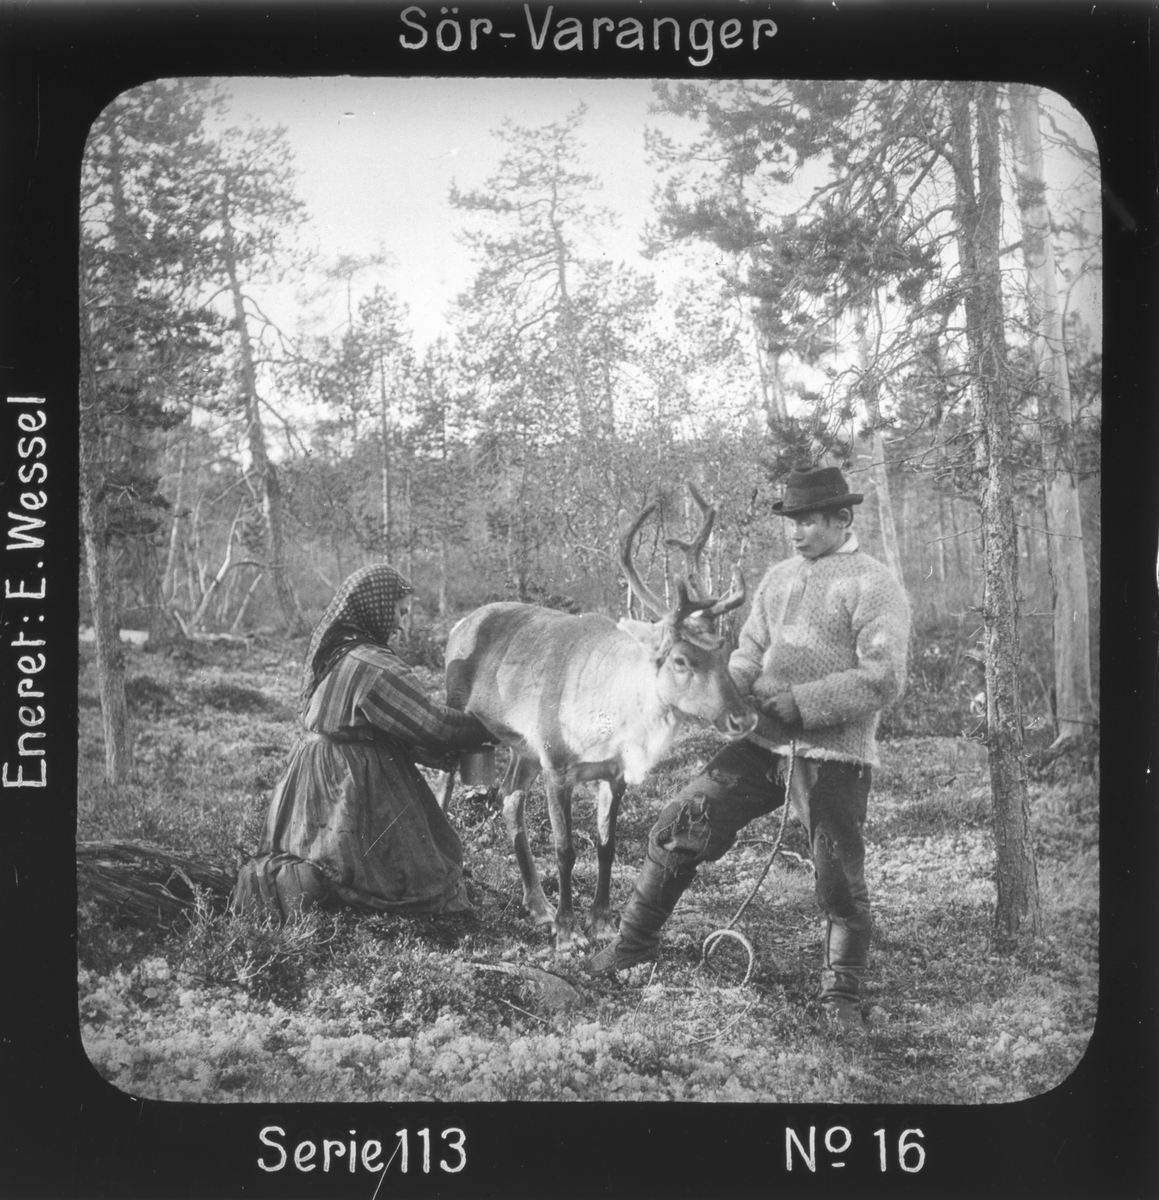 Melking av reinsdyr i skogen, Mutkavarre (Eidfjell), Sør- Varanger, Finnmark, før 1900. Kvinnen er enaresamen Marit, Hendo-Antis datter, gutten er kven fra Sør-Varanger.
Motivet har nr.16 i lysbildeforedraget kalt  "I lappernes land - Sør-Varanger", utgitt i Nerliens Lysbilledserier, serie nr 113. 